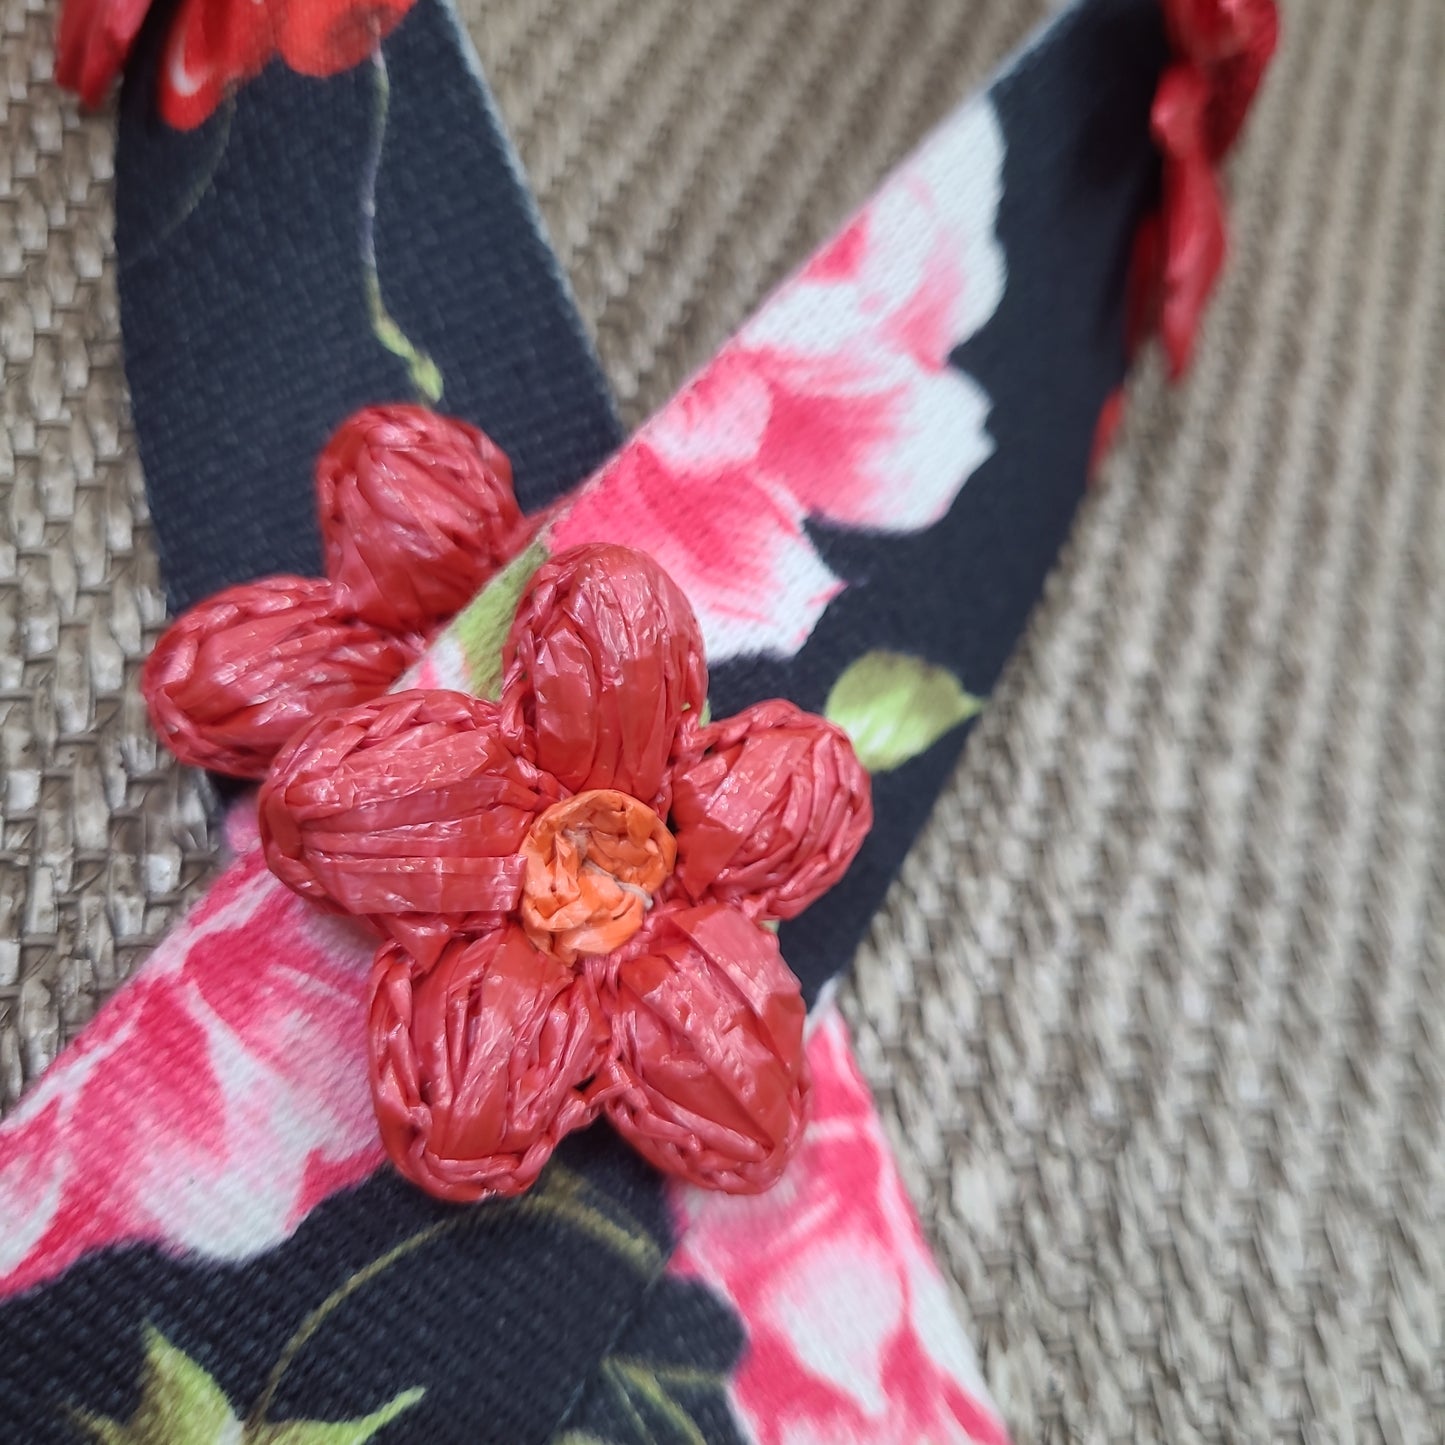 Flower bag strap : black + red